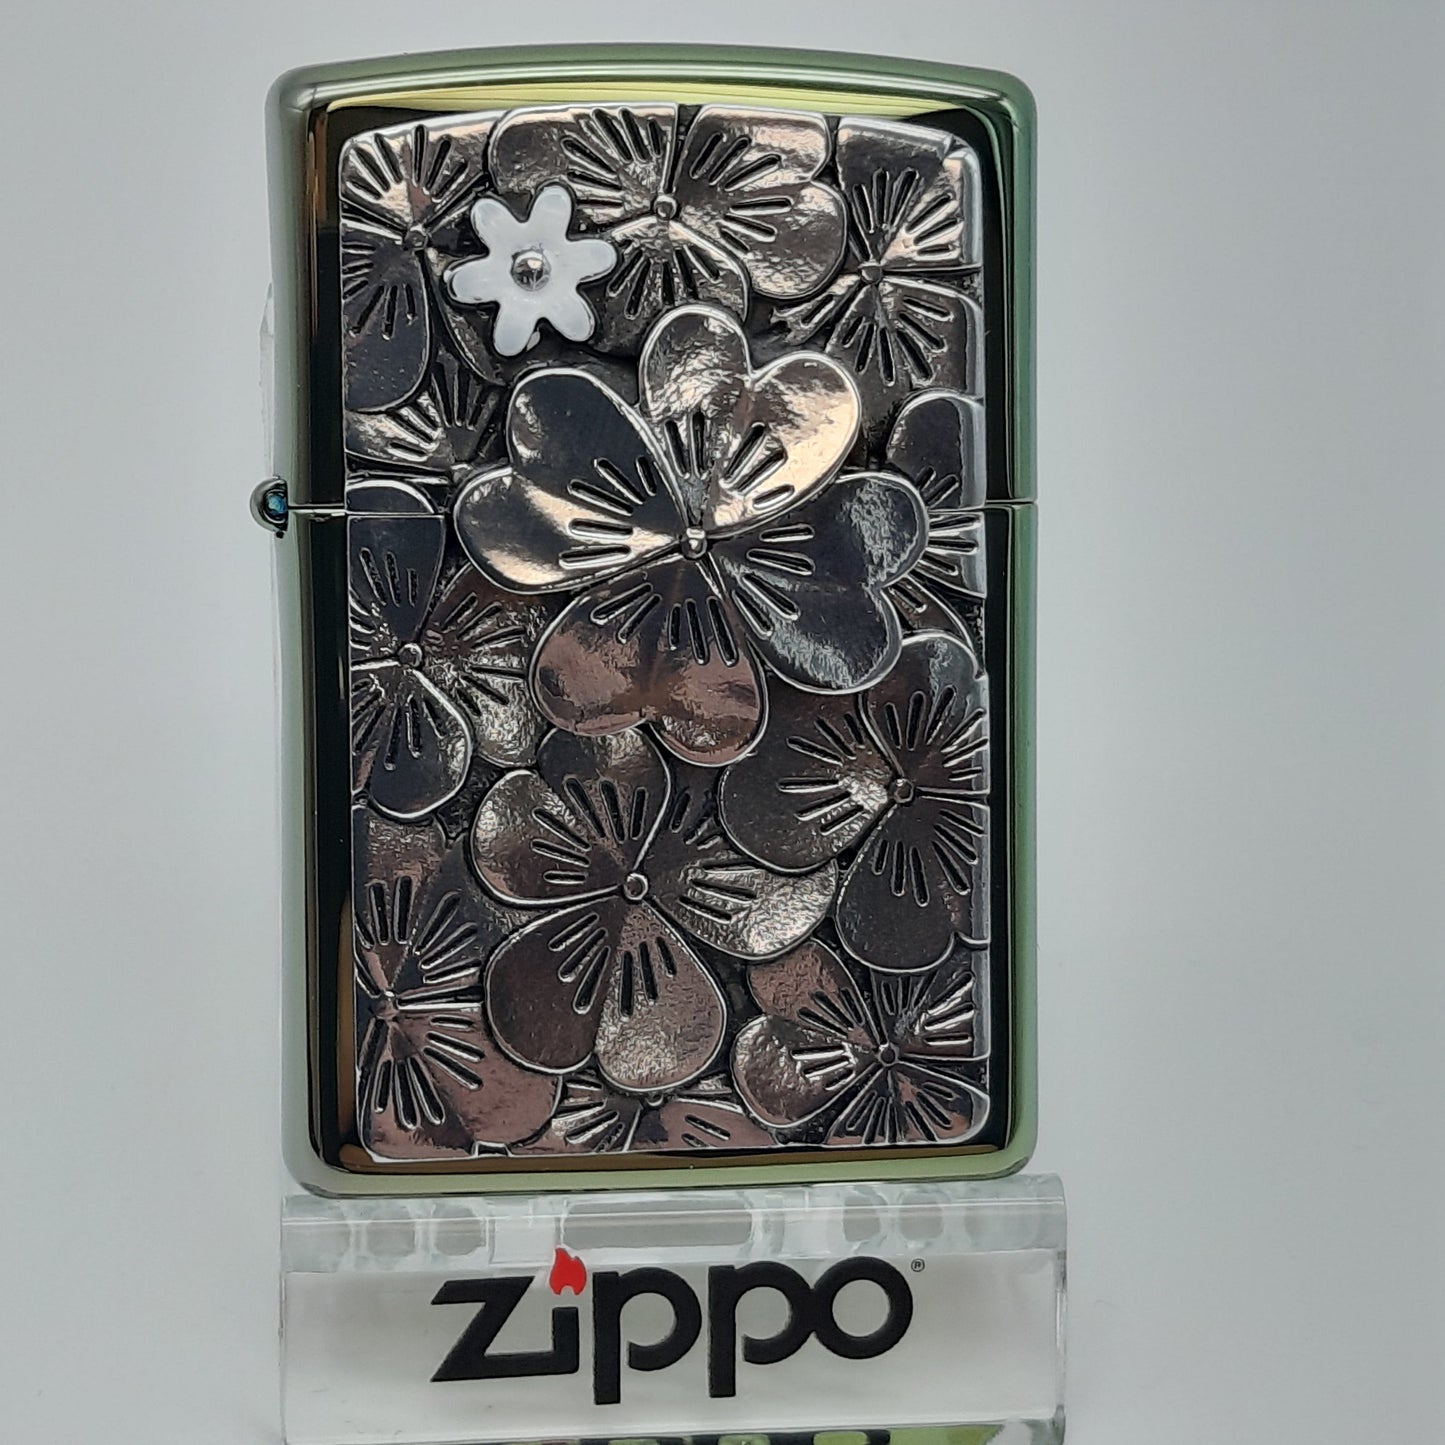 Zippo Zippo Benzinfeuerzeug Trick Clover Leaf - Limited Edition XXX/500